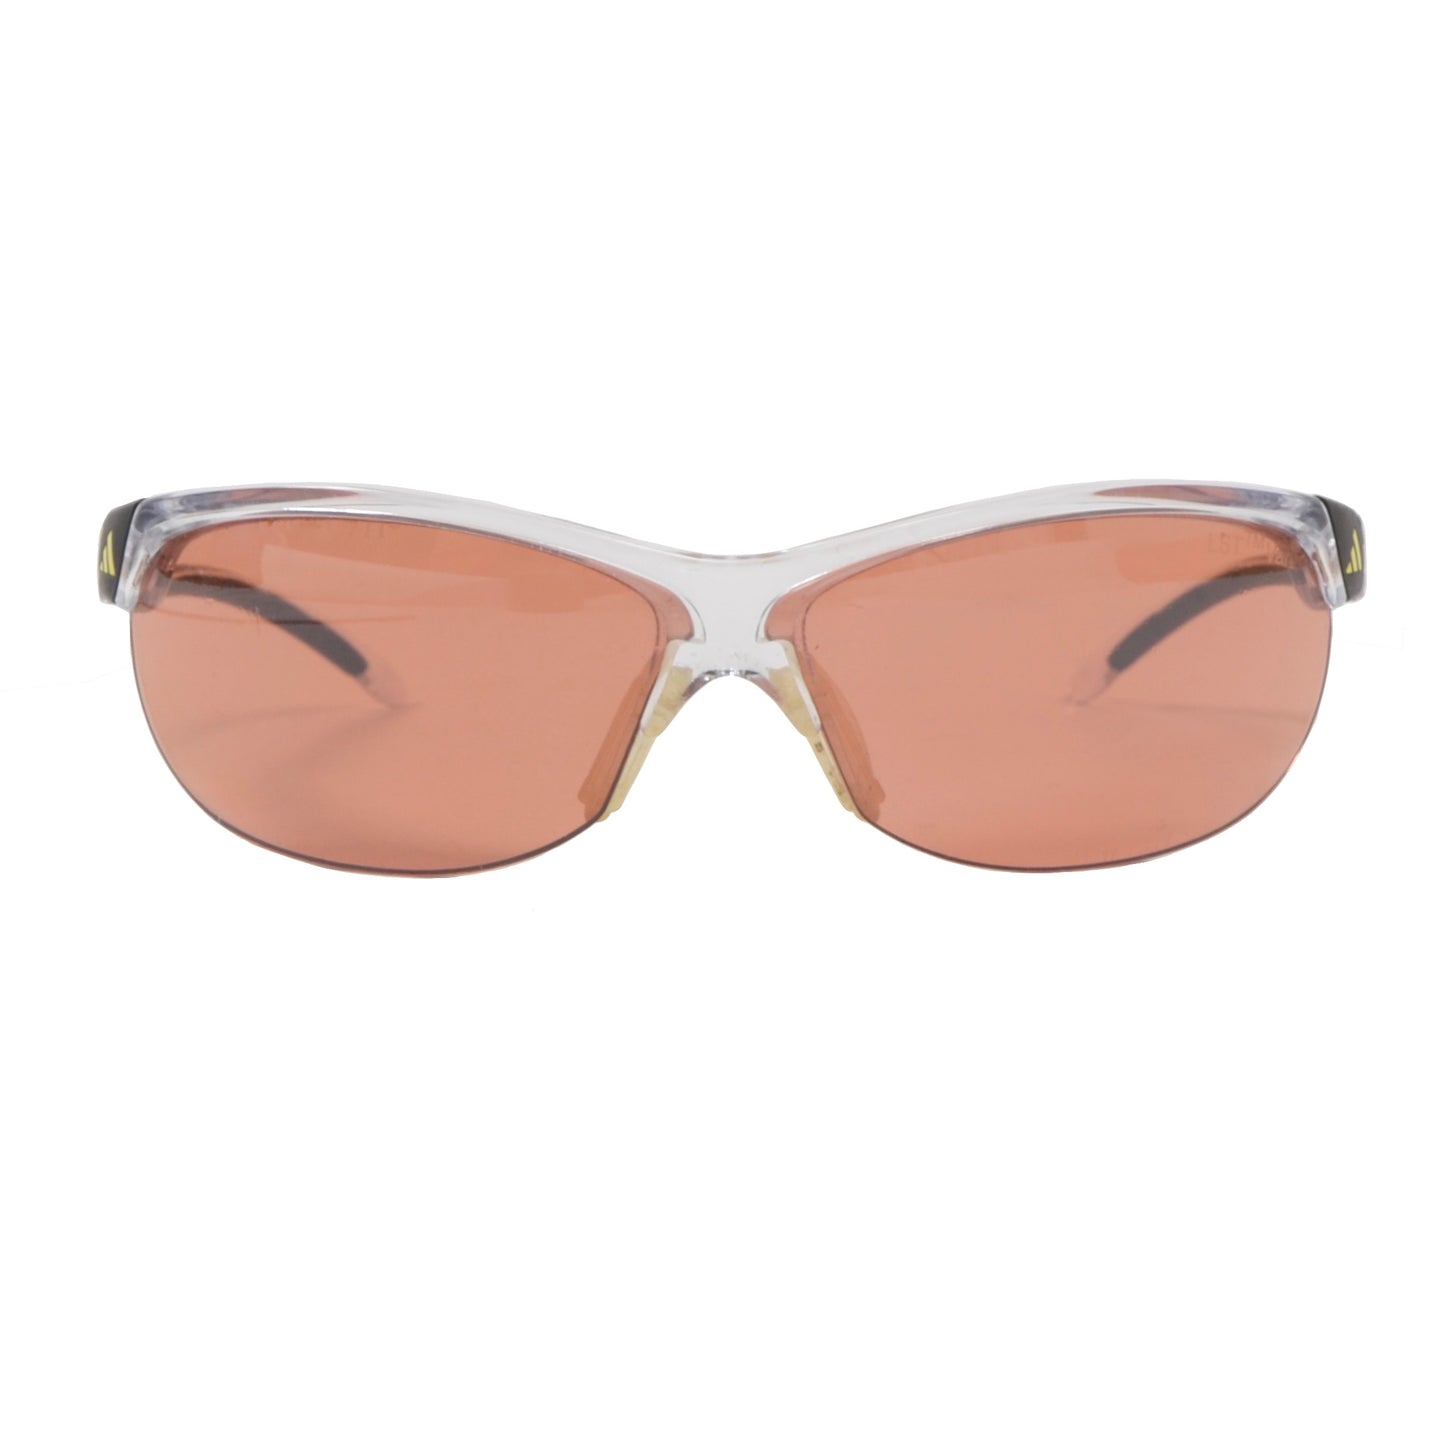 Adidas A171 6053 Adivista Sunglasses - Transparent